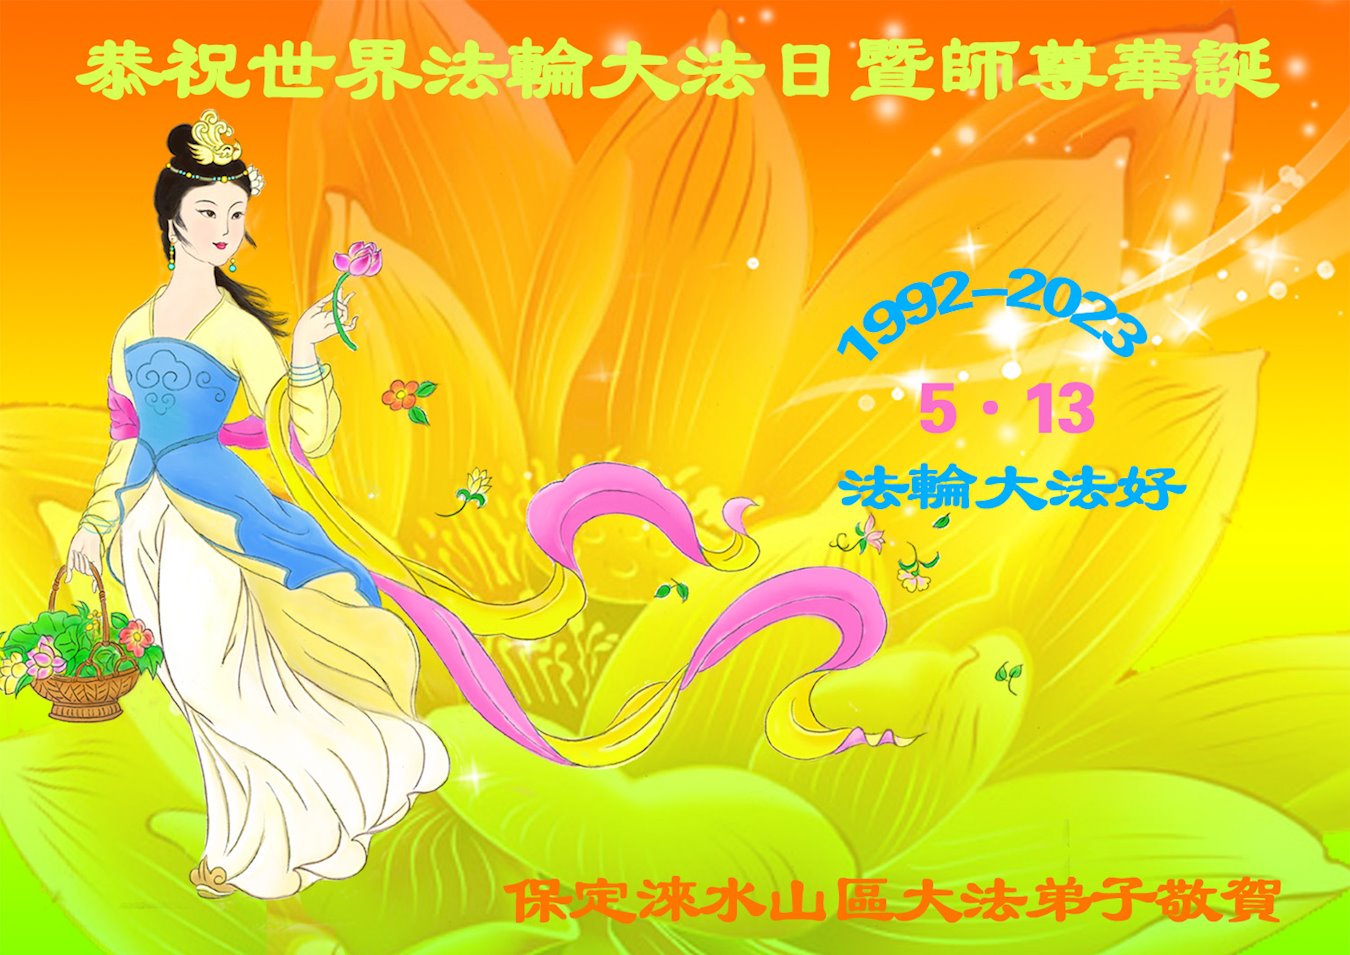 Image for article Vœux des pratiquants des régions rurales de Chine à l’occasion de la Journée mondiale du Falun Dafa